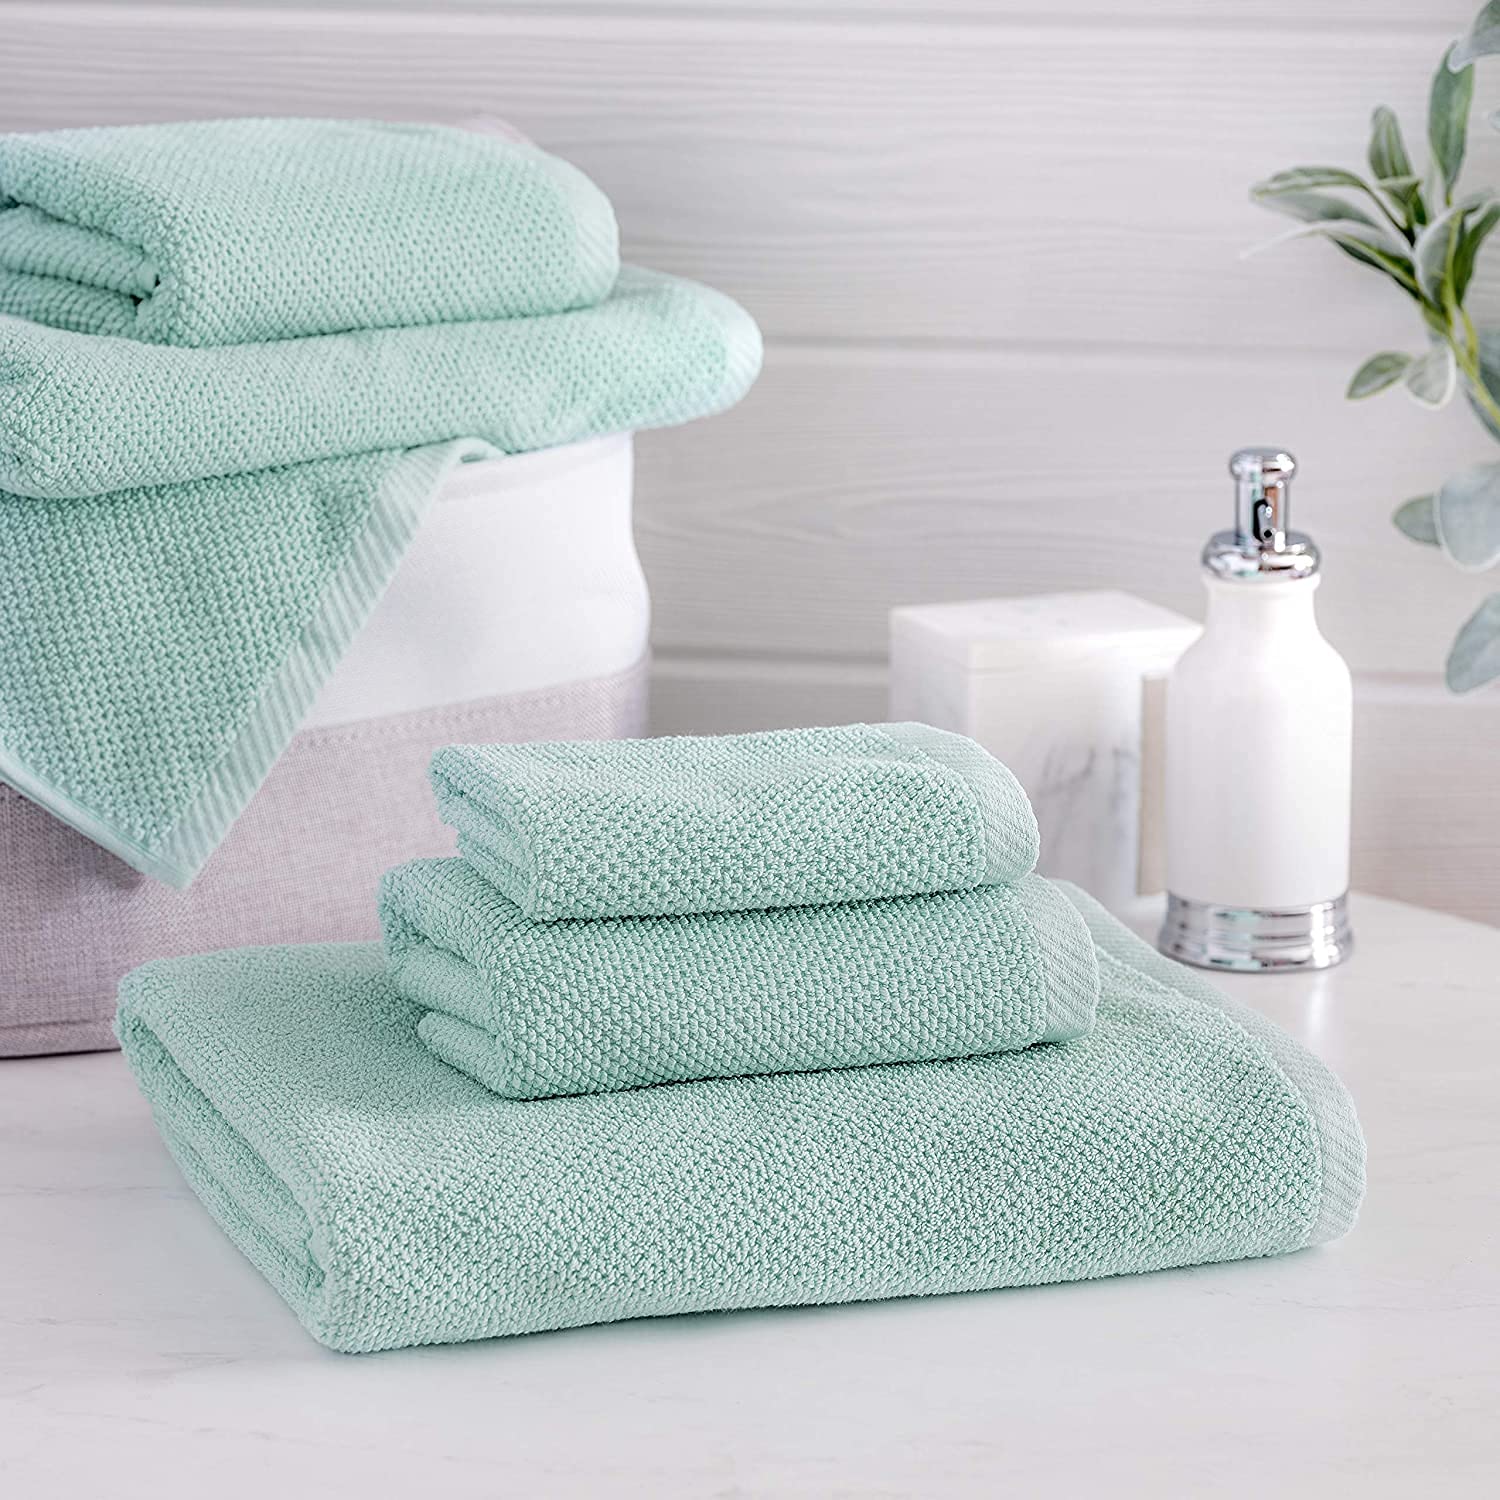 Towel Set 6 PC Set 100% Cotton 600 GSM 2 Bath 2 Hand 2 Wash Towels